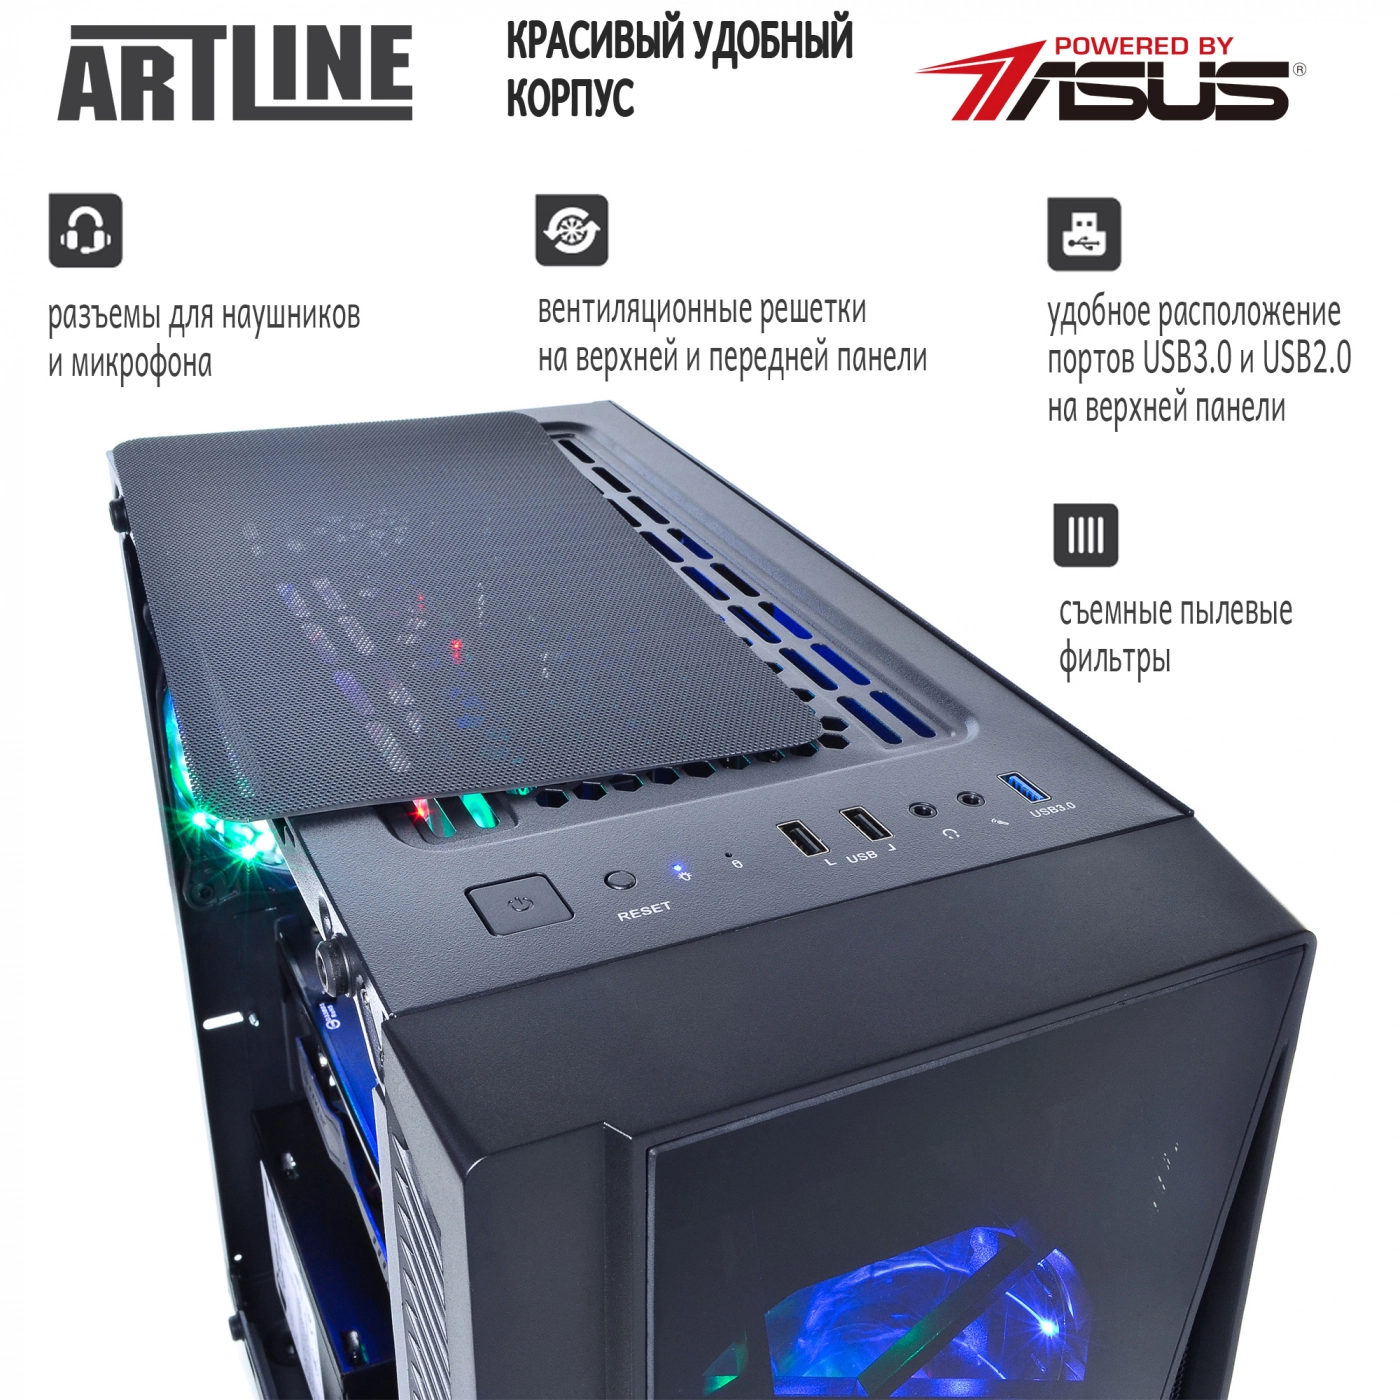 Купить Компьютер ARTLINE Gaming X37v27 - фото 3